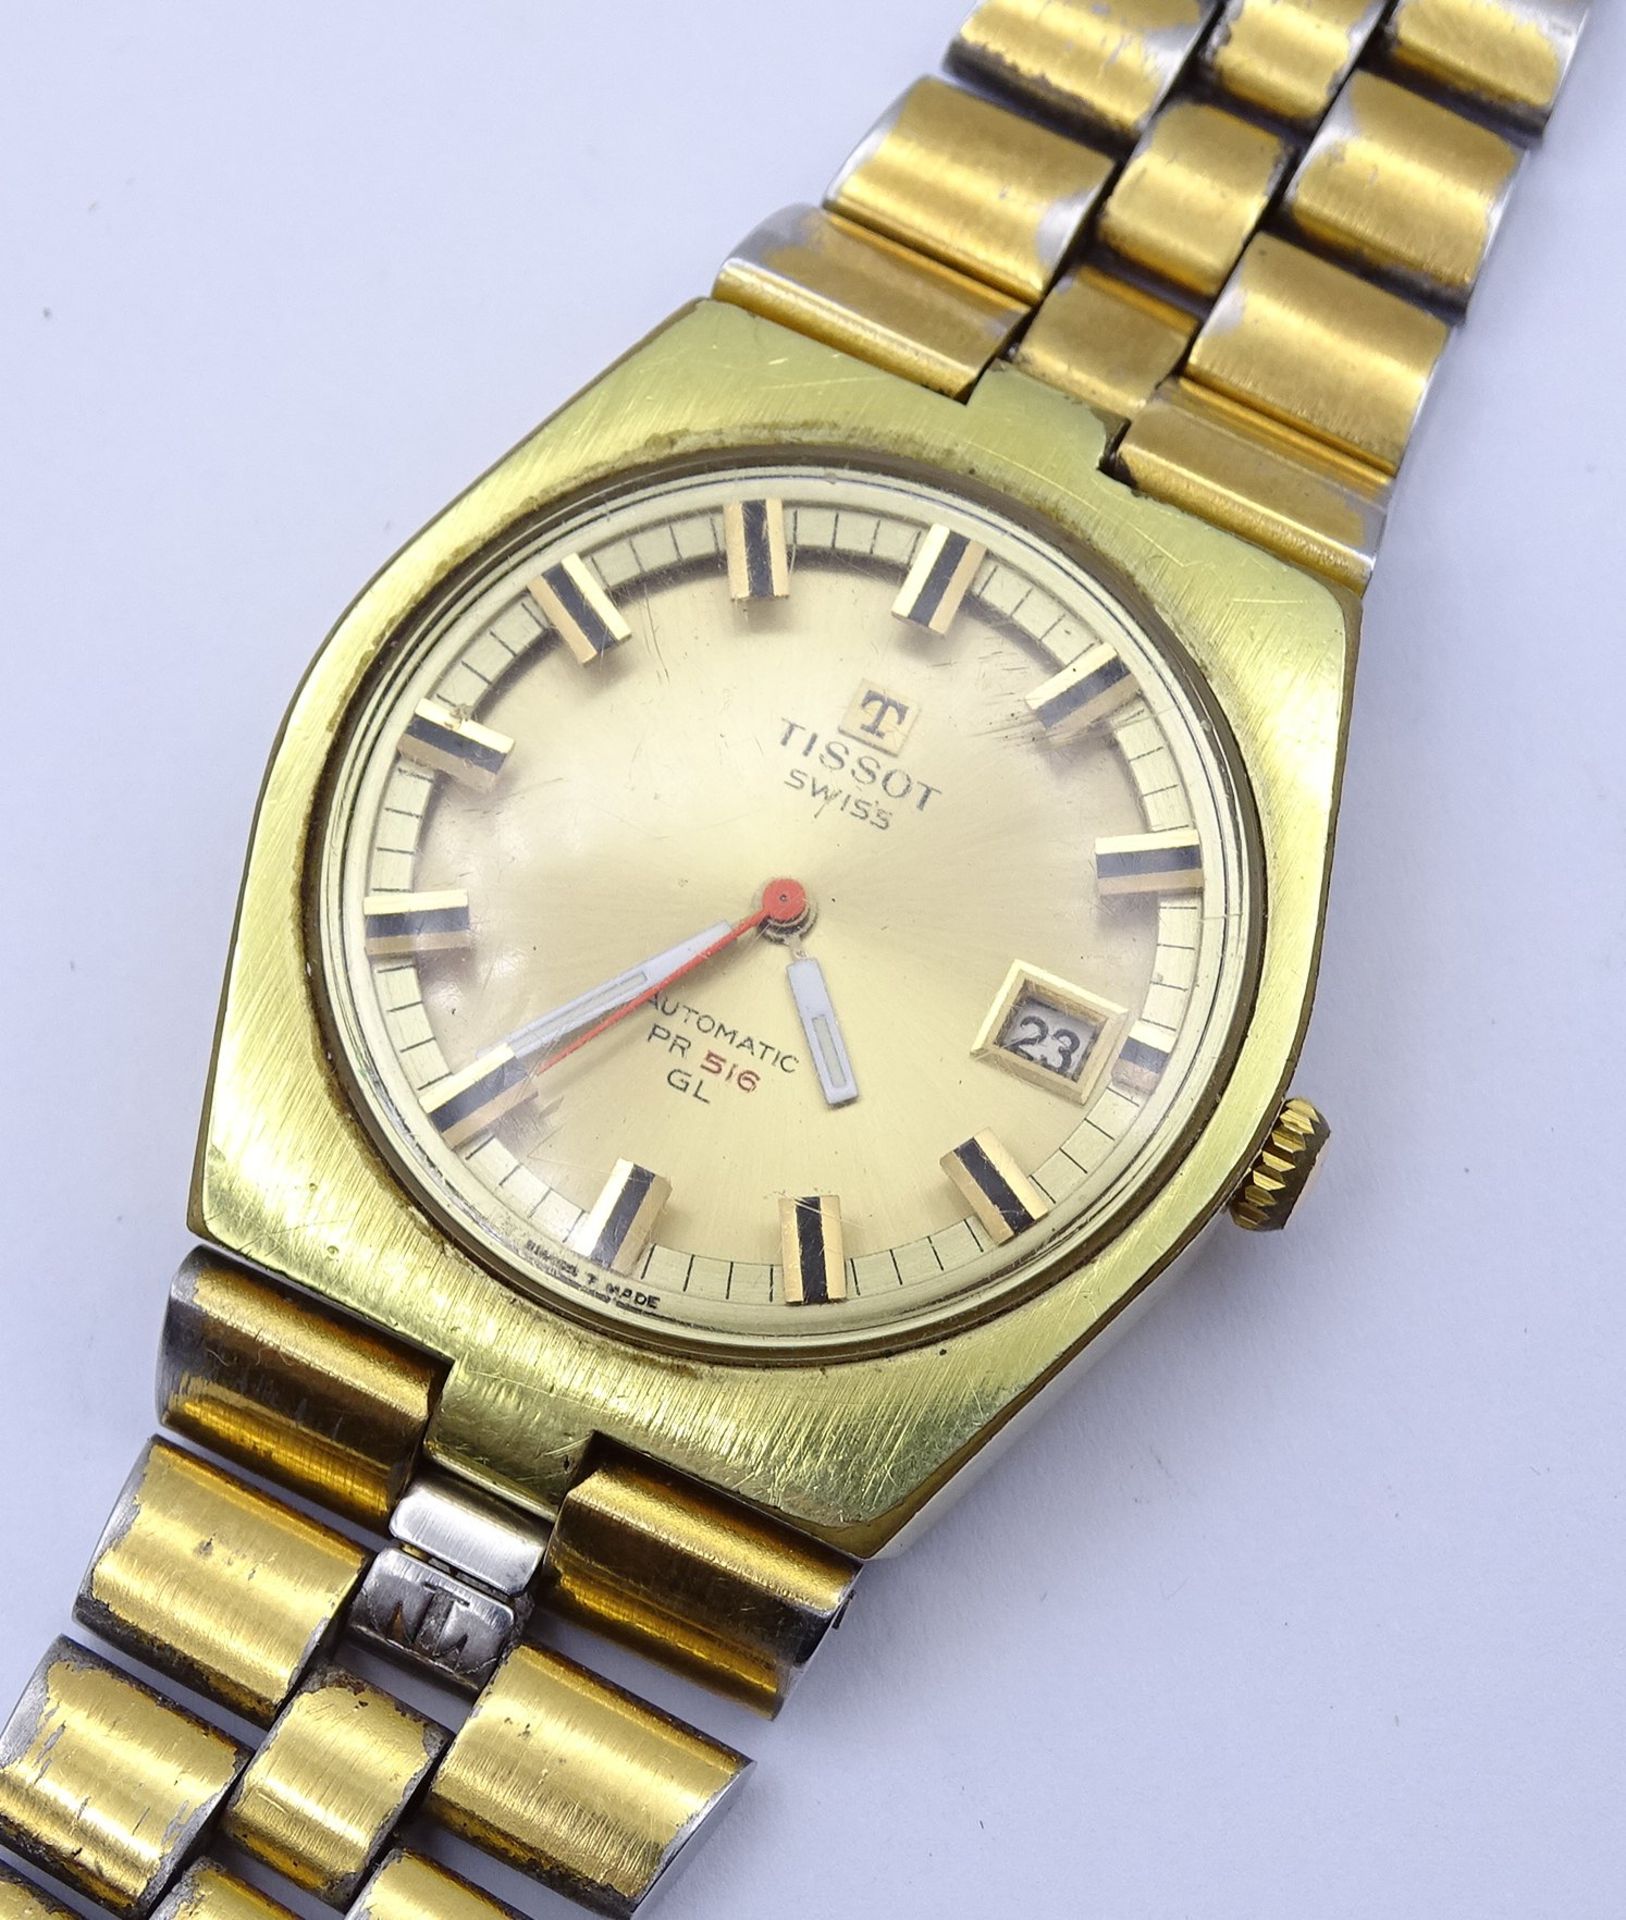 Vintage Herren Armbanduhr "Tissot" PR 516 GL, Automatikwerk, Werk läuft, Gehäuse 3,6x3,7cm, Band st